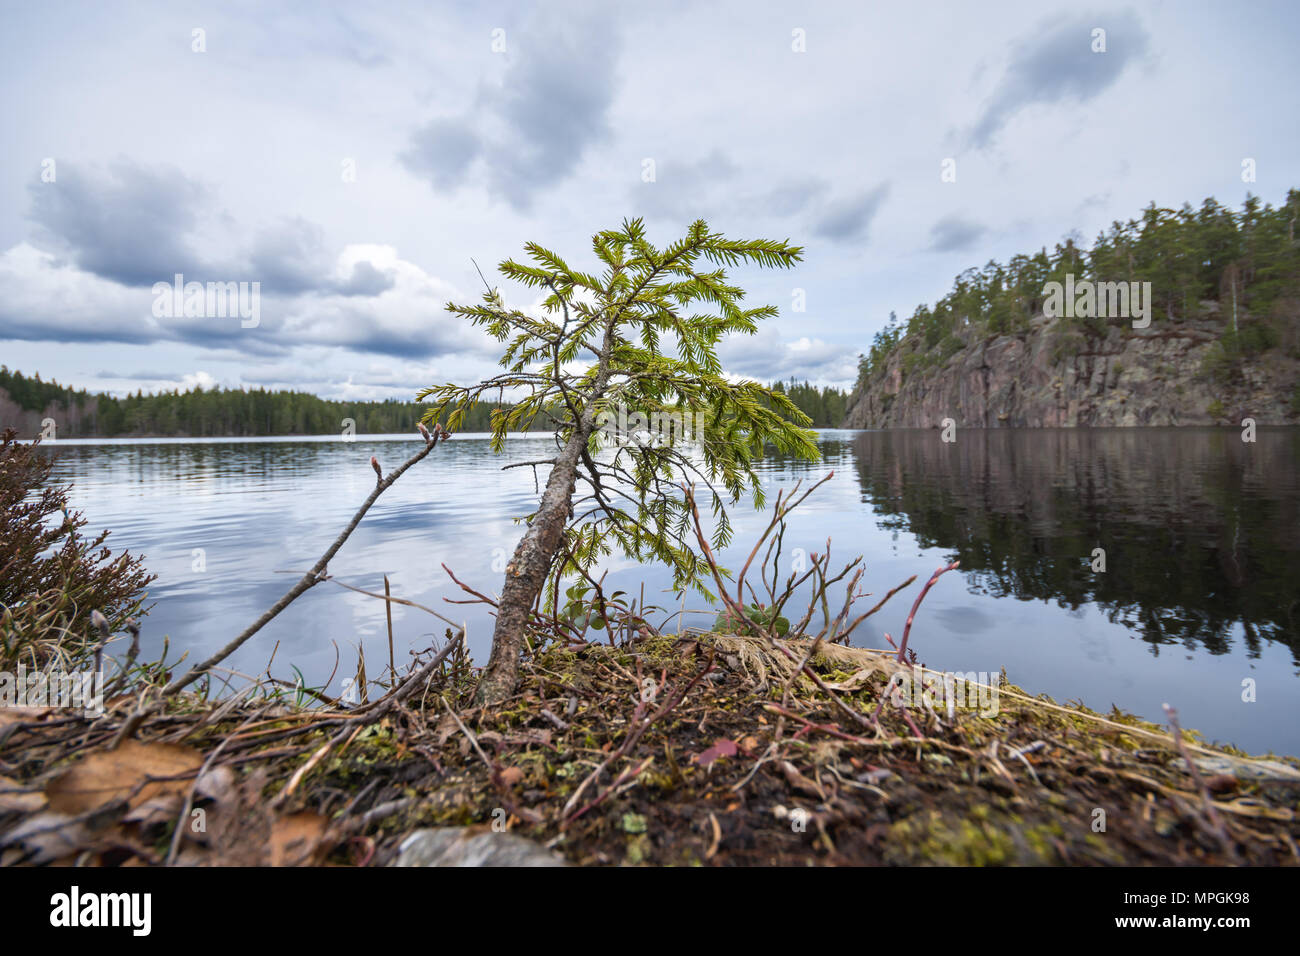 Piccolo albero di abete sulla riva del lago, con roccia ripida in background. Presa lungo il Bergslagsleden sentiero escursionistico, in Ånnaboda, Svezia. Foto Stock